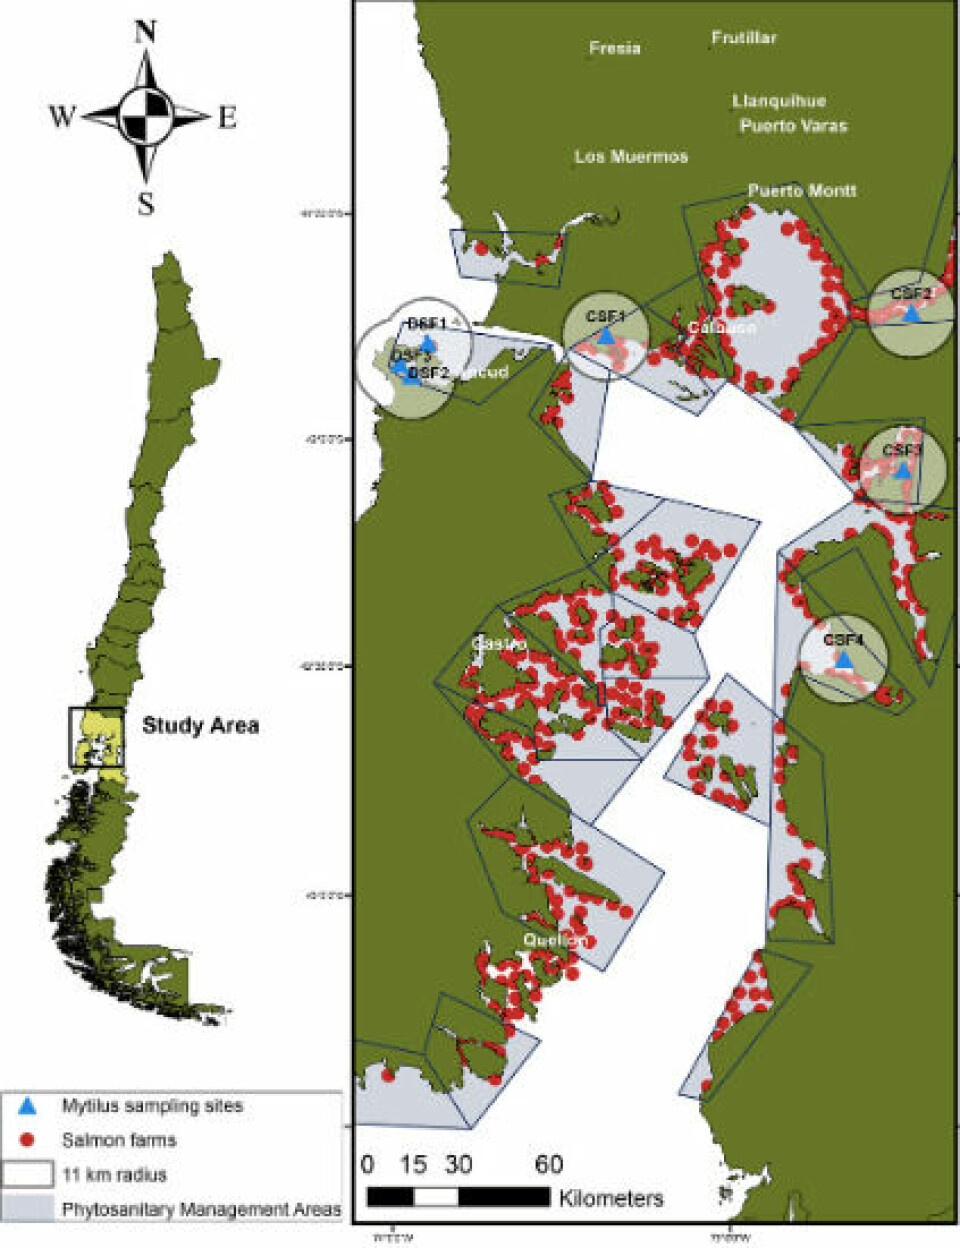 Ubicación geográfica de los sitios de muestreo de choritos lejos (DSF) y cercanos (CSF) a centros de cultivo de salmón (Hacer clic en la imagen para ampliar). Fuente: Ramírez y col., 2021.